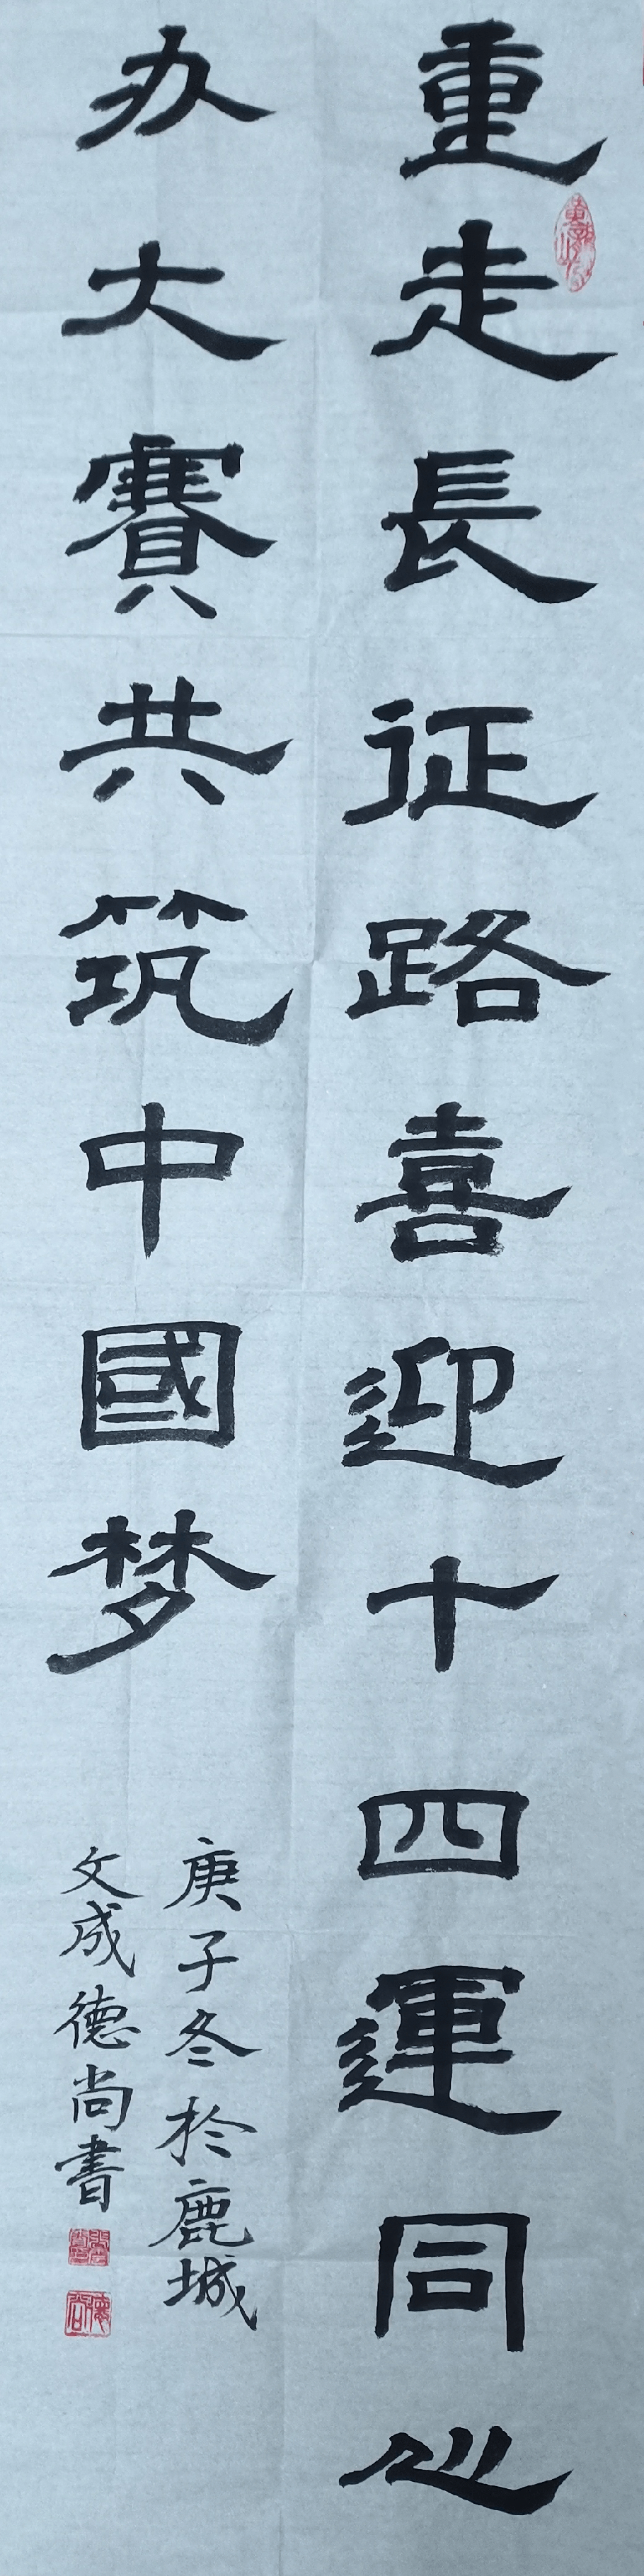 95,姓名:赵盼盼,作品:软笔书法,区域:山西省.